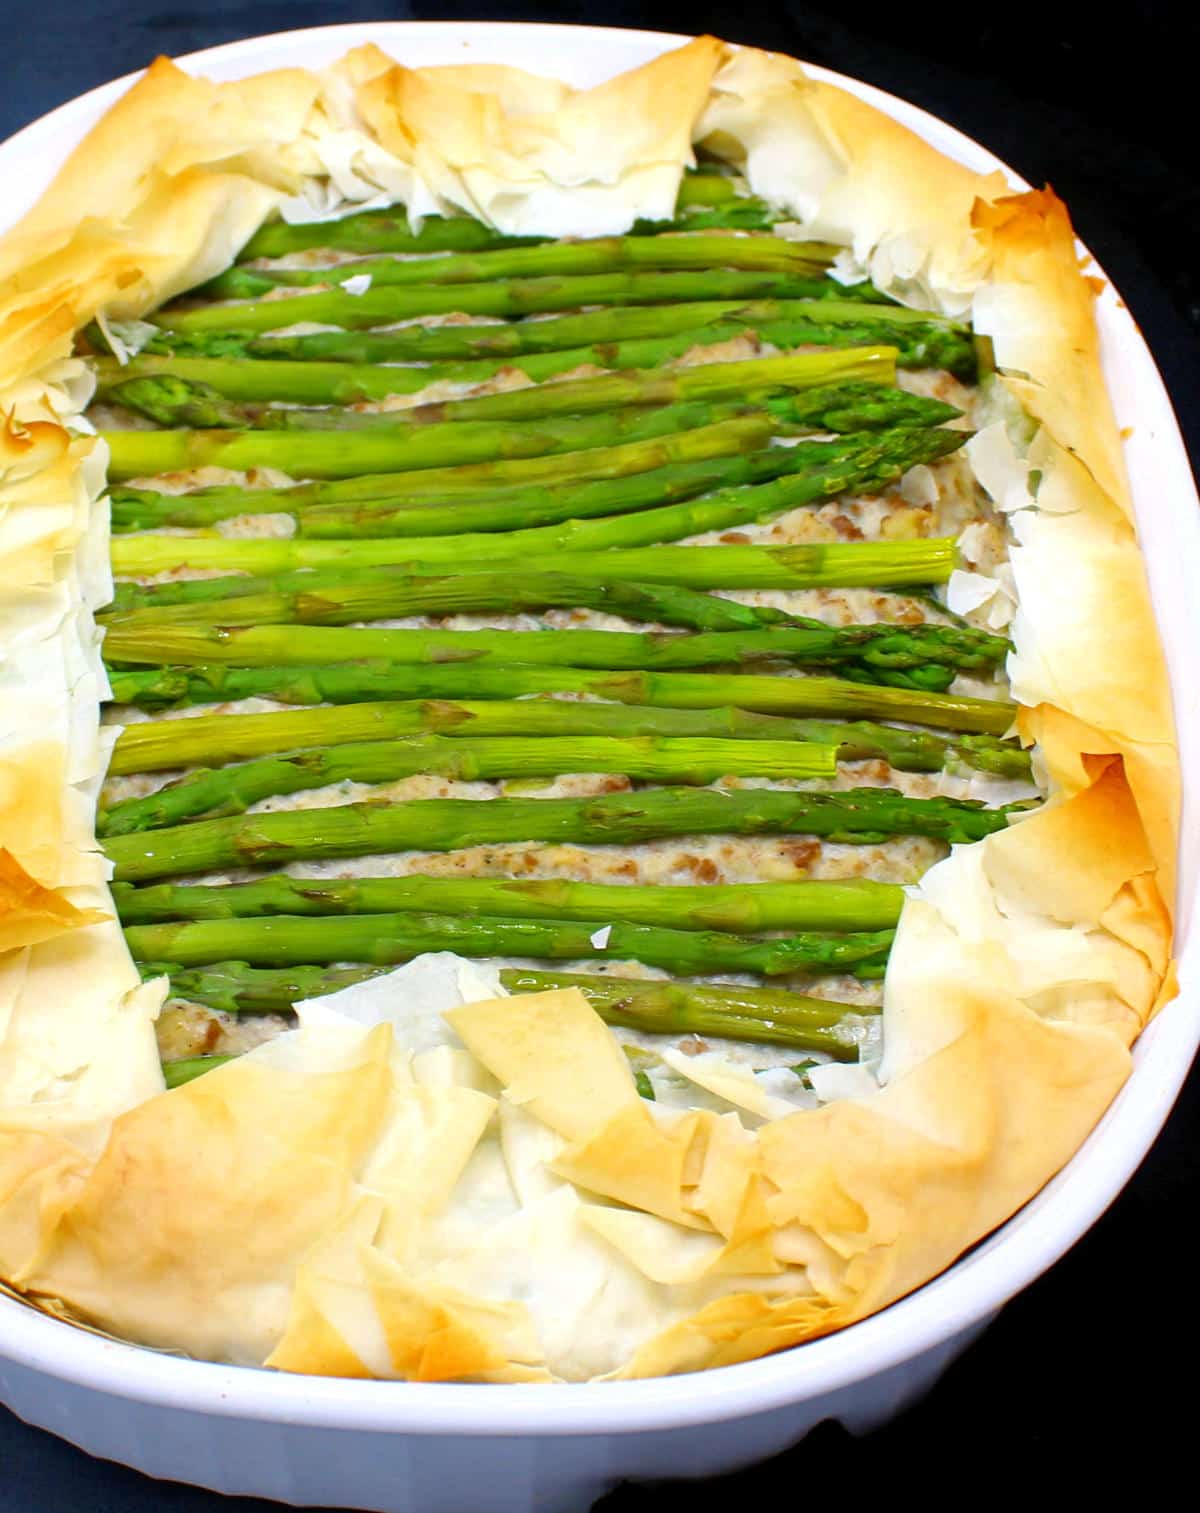 Baked vegan asparagus tart with golden edges in baking dish.